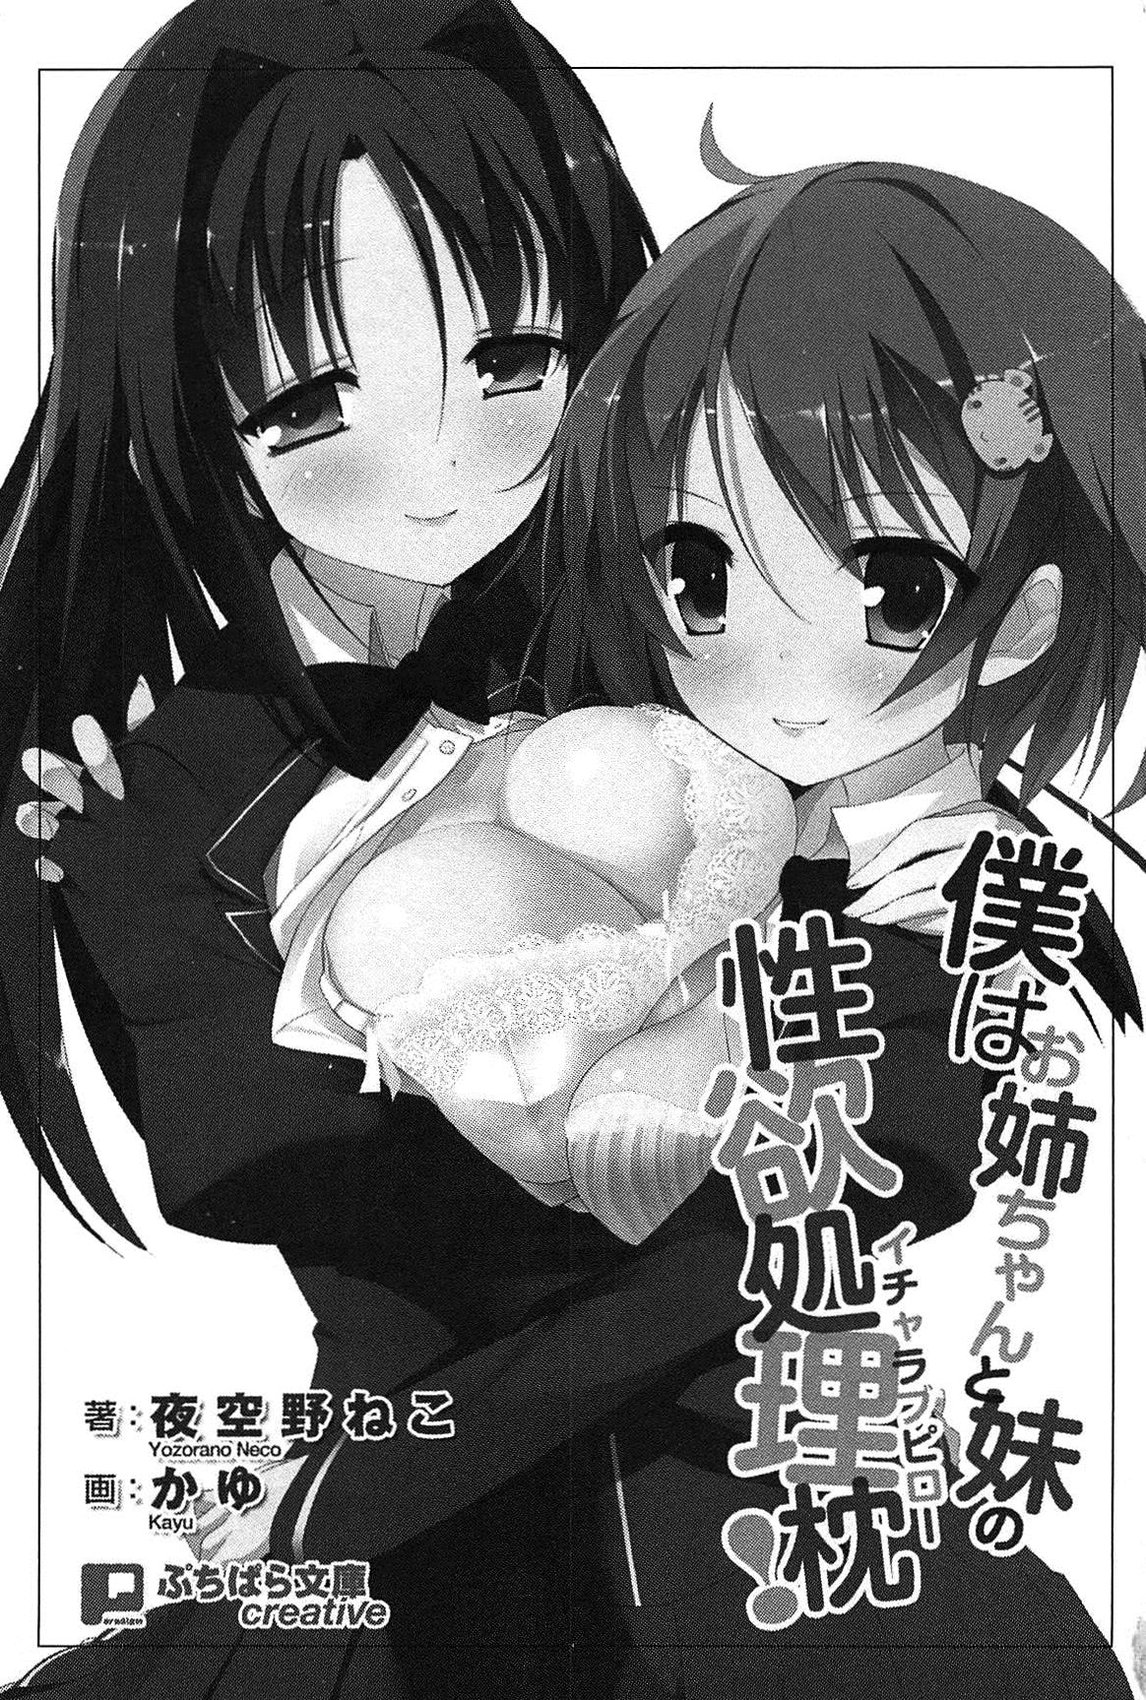 [Yozorano Neko, Kayu] Boku wa Oneechan to Imouto no Icha Love Pillow! [夜空野ねこ, かゆ] 僕はお姉ちゃんと妹の性欲処理枕!